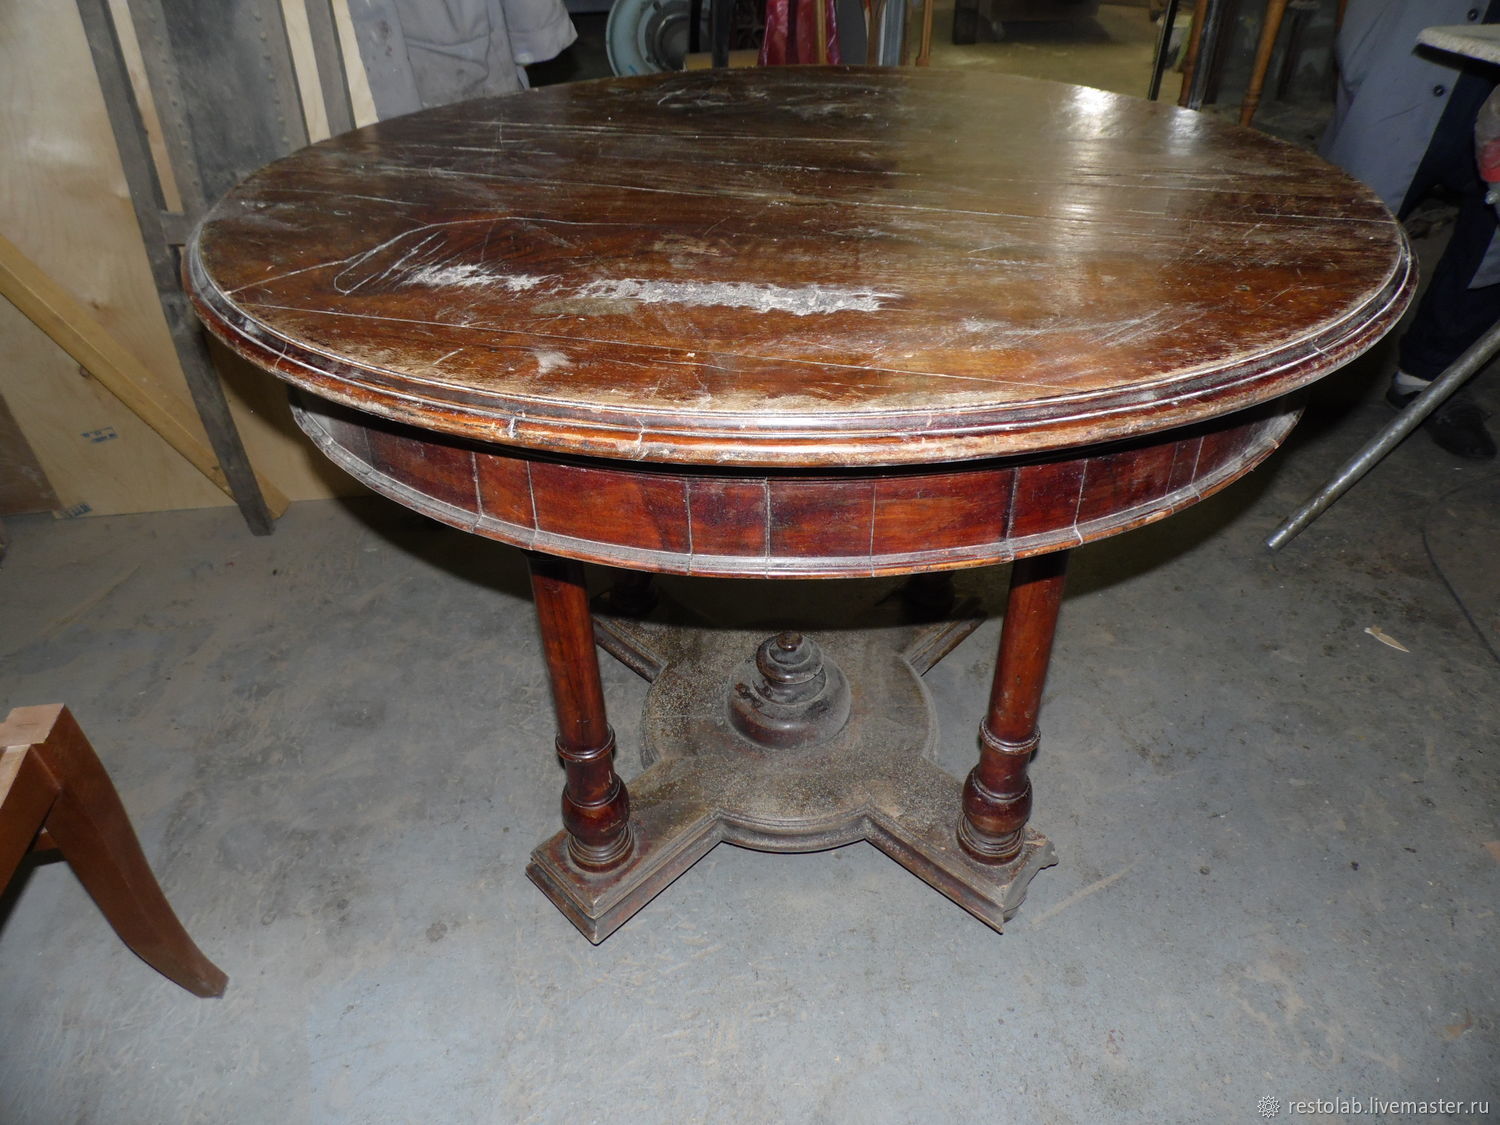 Реставрируем старый деревянный столик